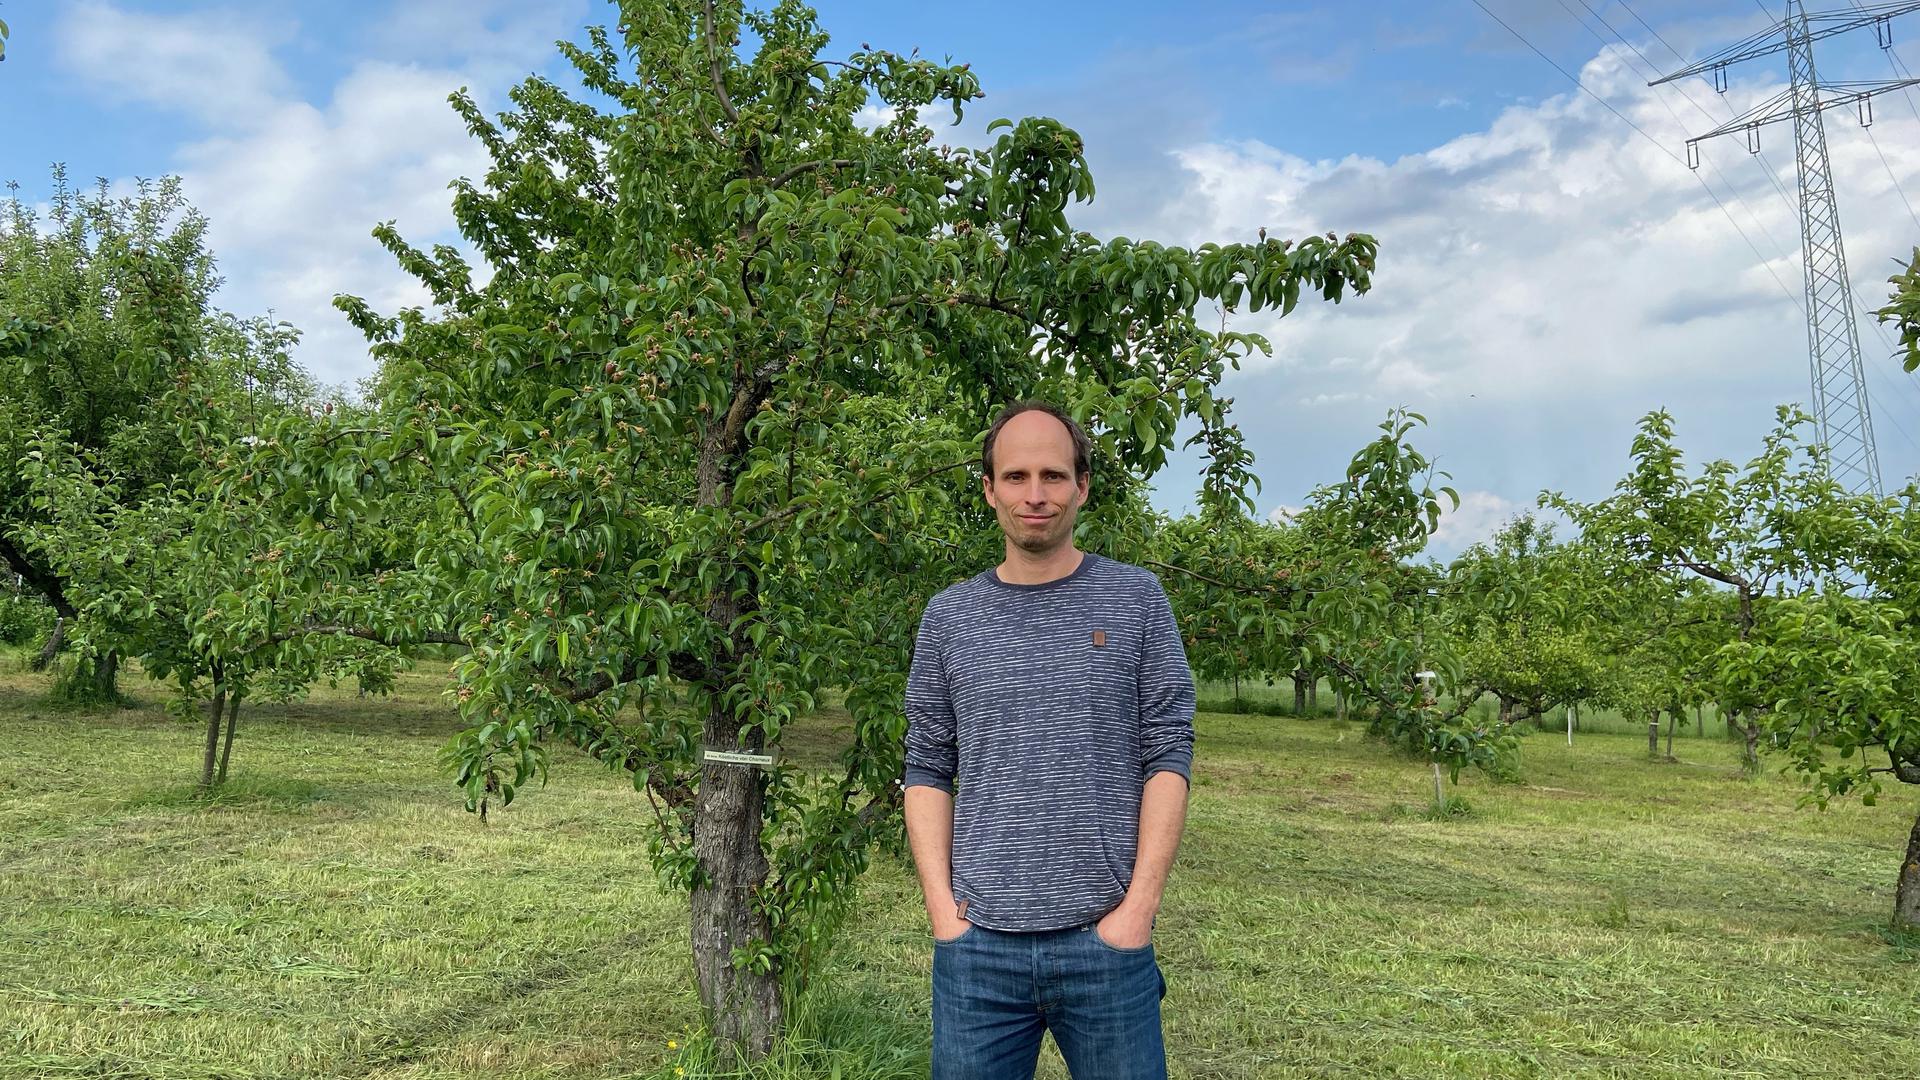 Alexander Wiedemann, der Vorsitzende des Obst- und Gartenbauvereins Berghausen, steht auf einer Wiese mit Obstbäumen.